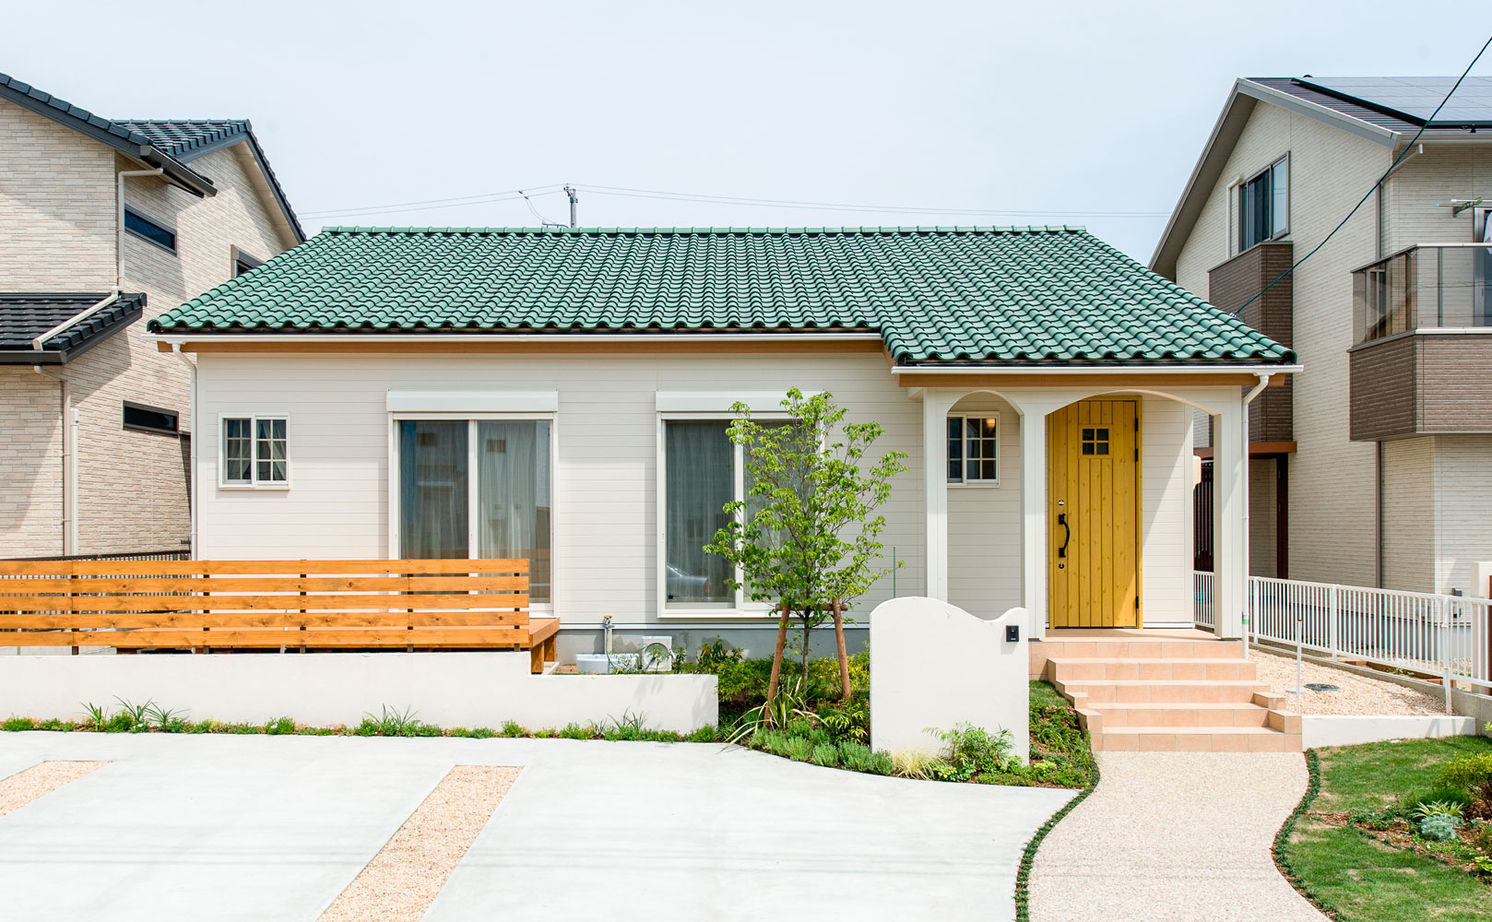 Suumo 1000万円台 30坪 ロフト 可愛い平屋実例 子育てしやすく 住みやすい可変性ある間取りと開放感に感激 のこのこのいえ の建築実例詳細 注文住宅